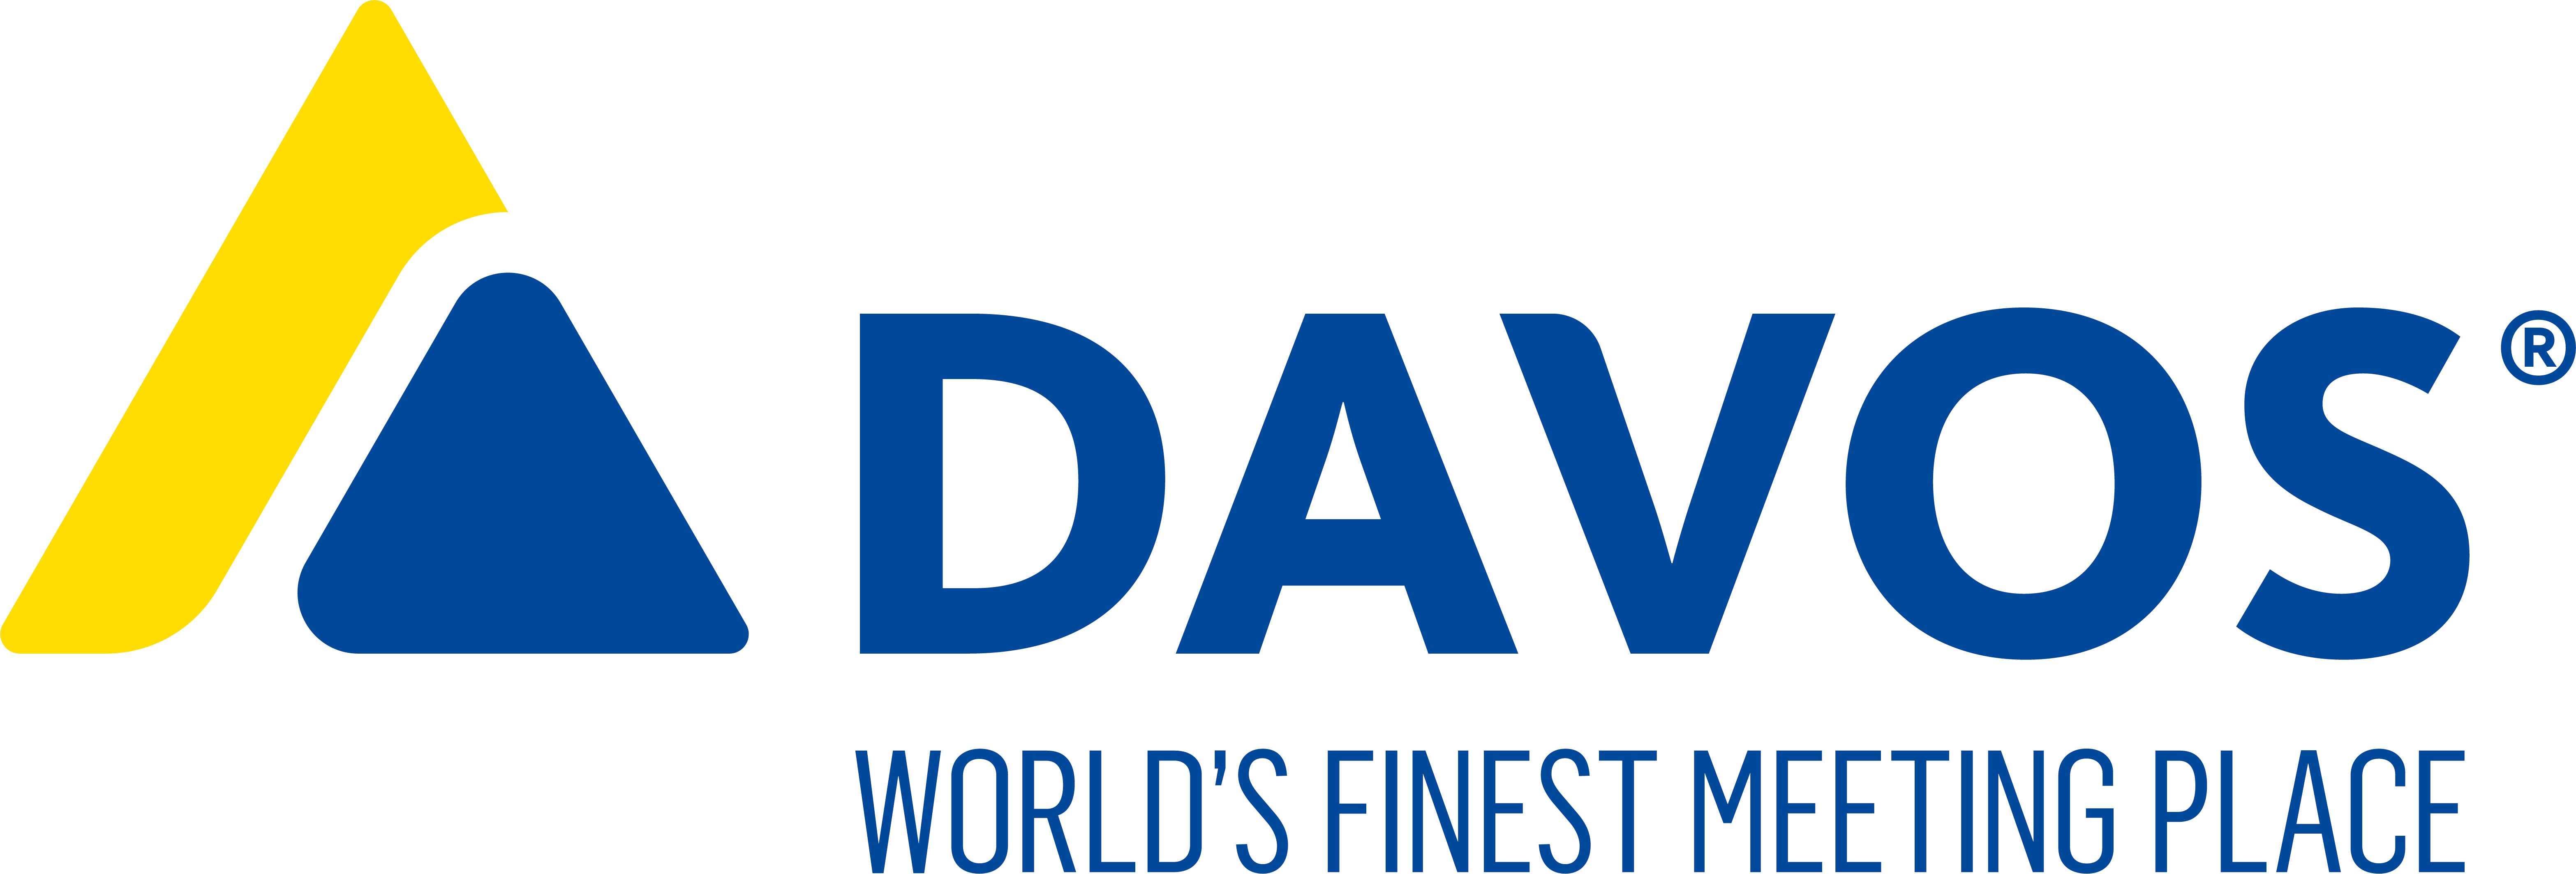 Davos CVB and Congress Centre  